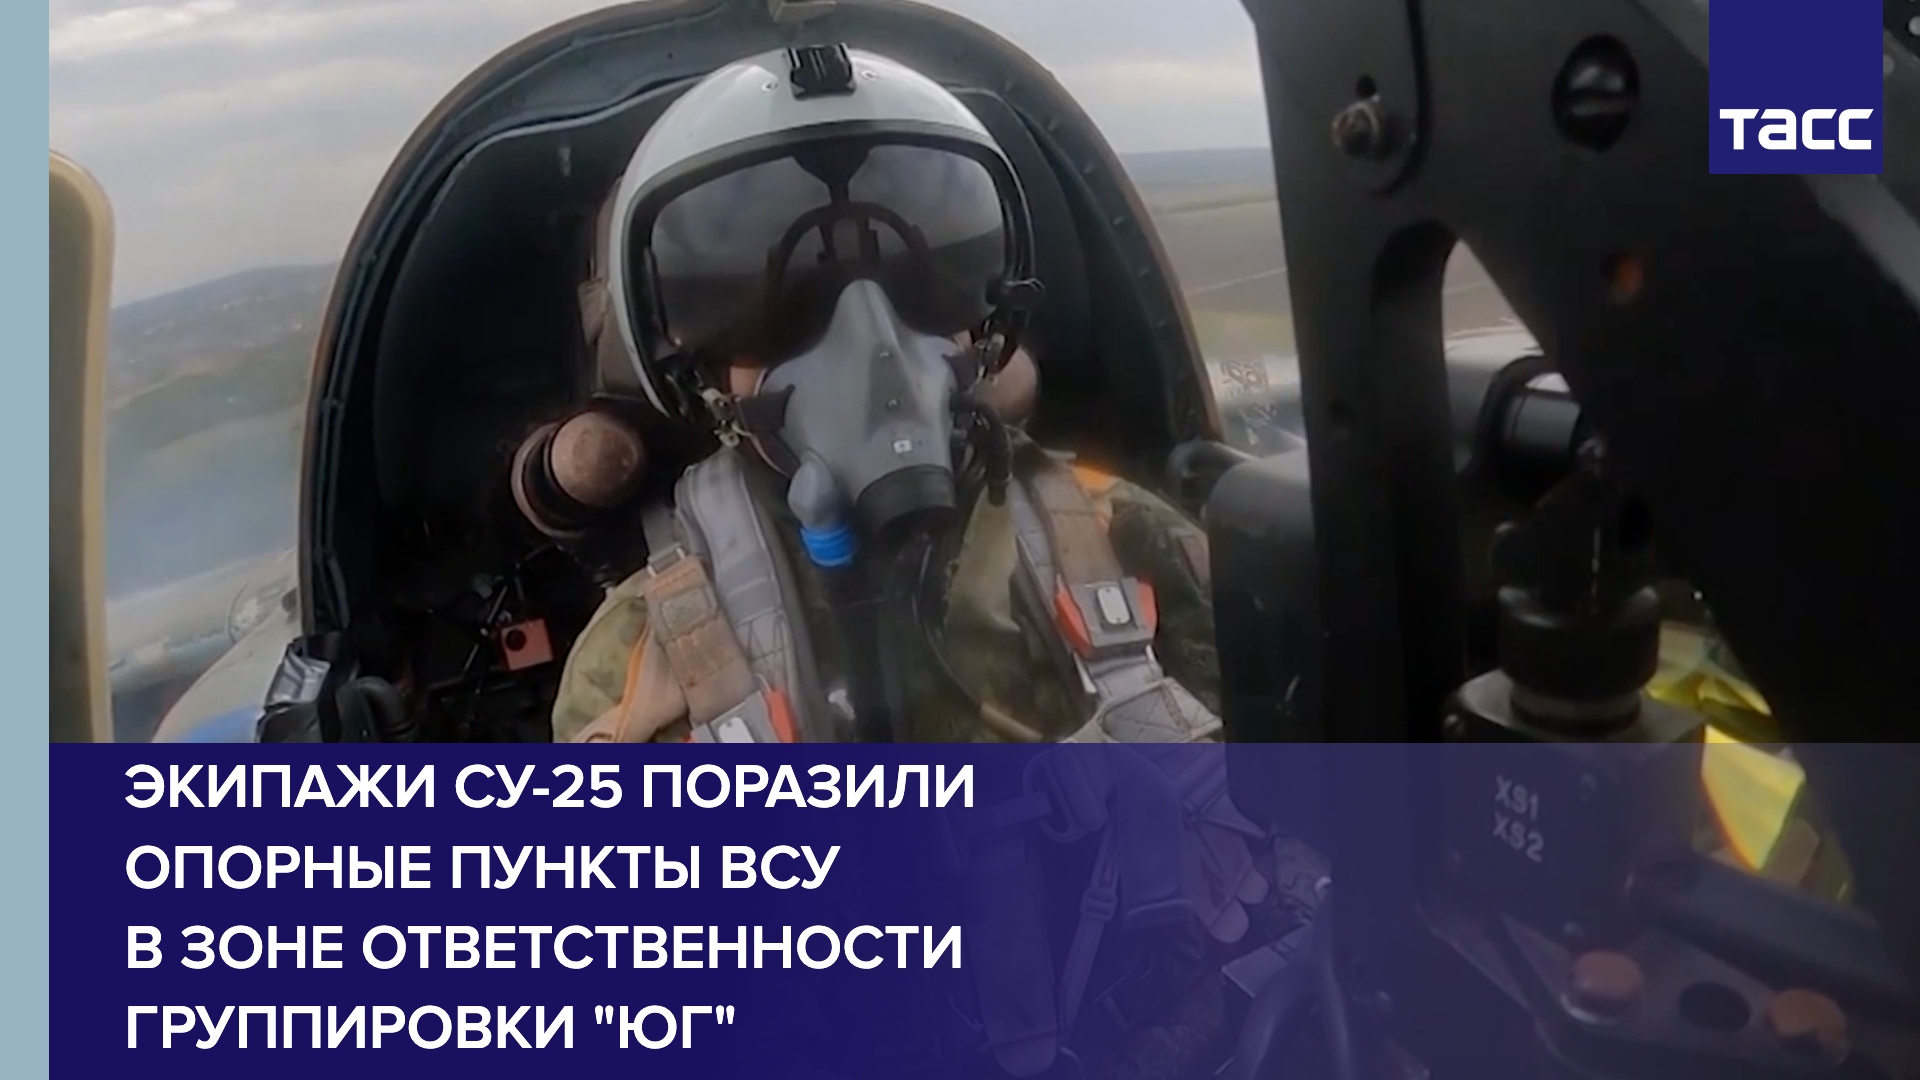 Экипажи Су-25 поразили опорные пункты ВСУ в зоне ответственности группировки "Юг"